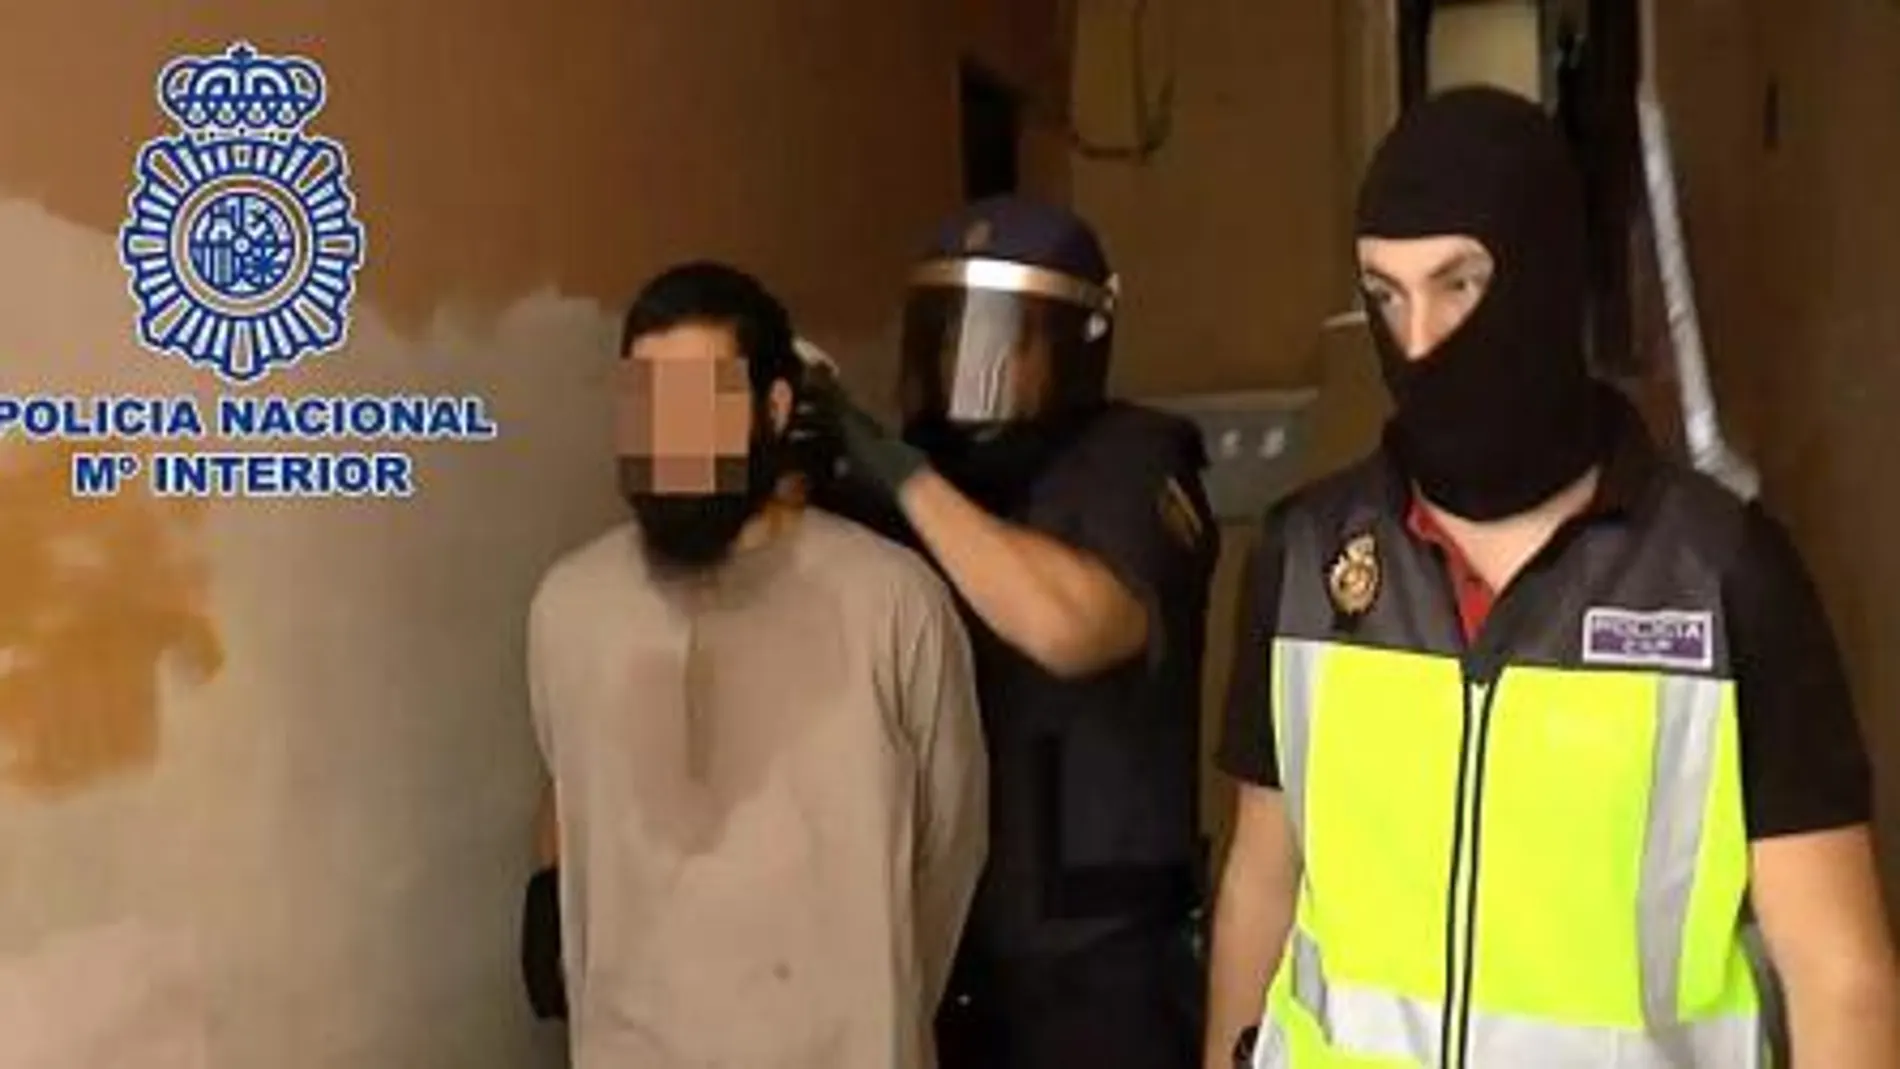 Fotografía de archivo dce una operación contra el yihadismo en Melilla